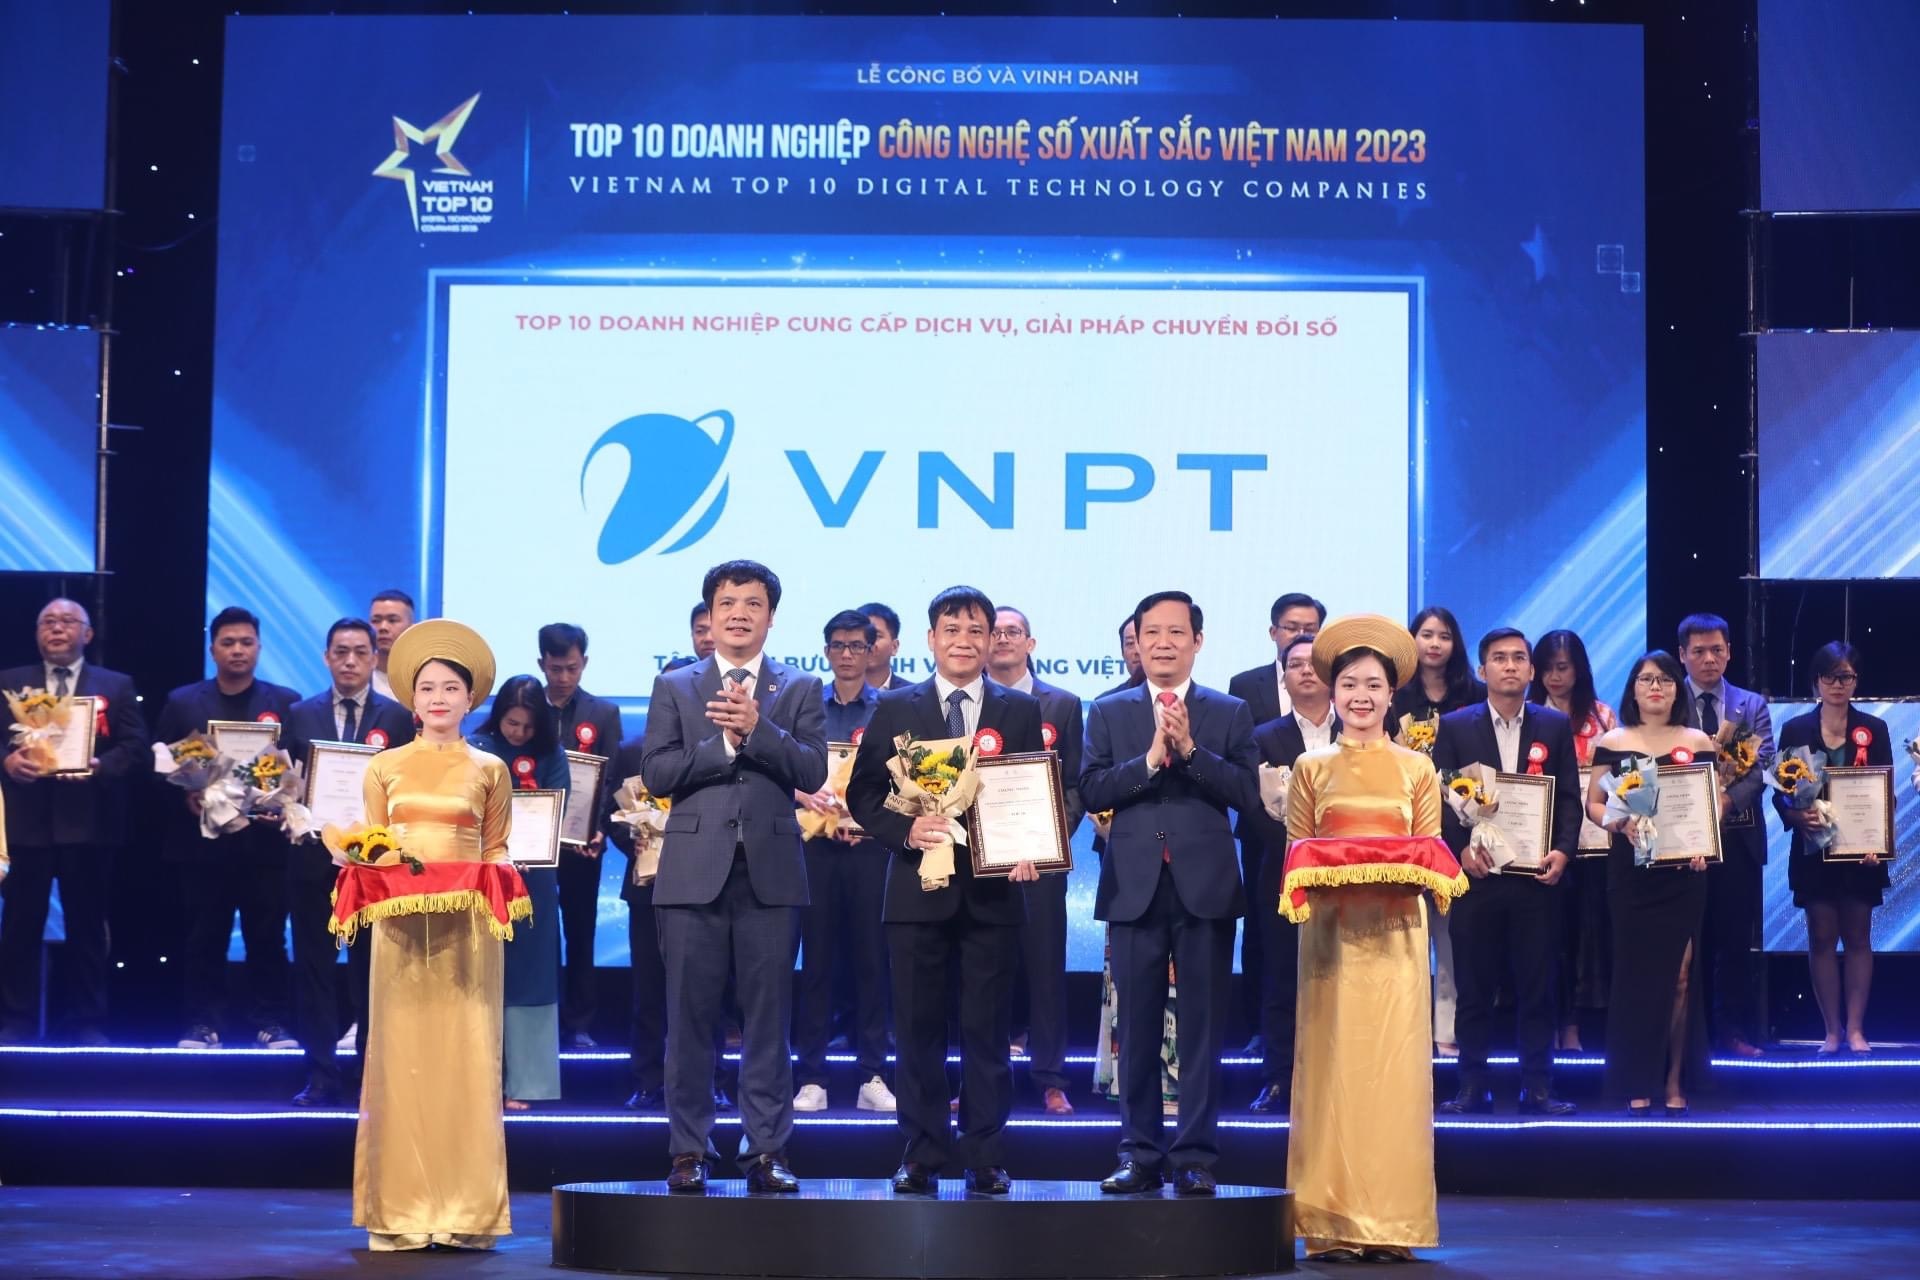 Đại diện Tập đoàn VNPT lên nhận chứng nhận TOP 10 Doanh nghiệp cung cấp dịch vụ, giải pháp chuyển đổi số